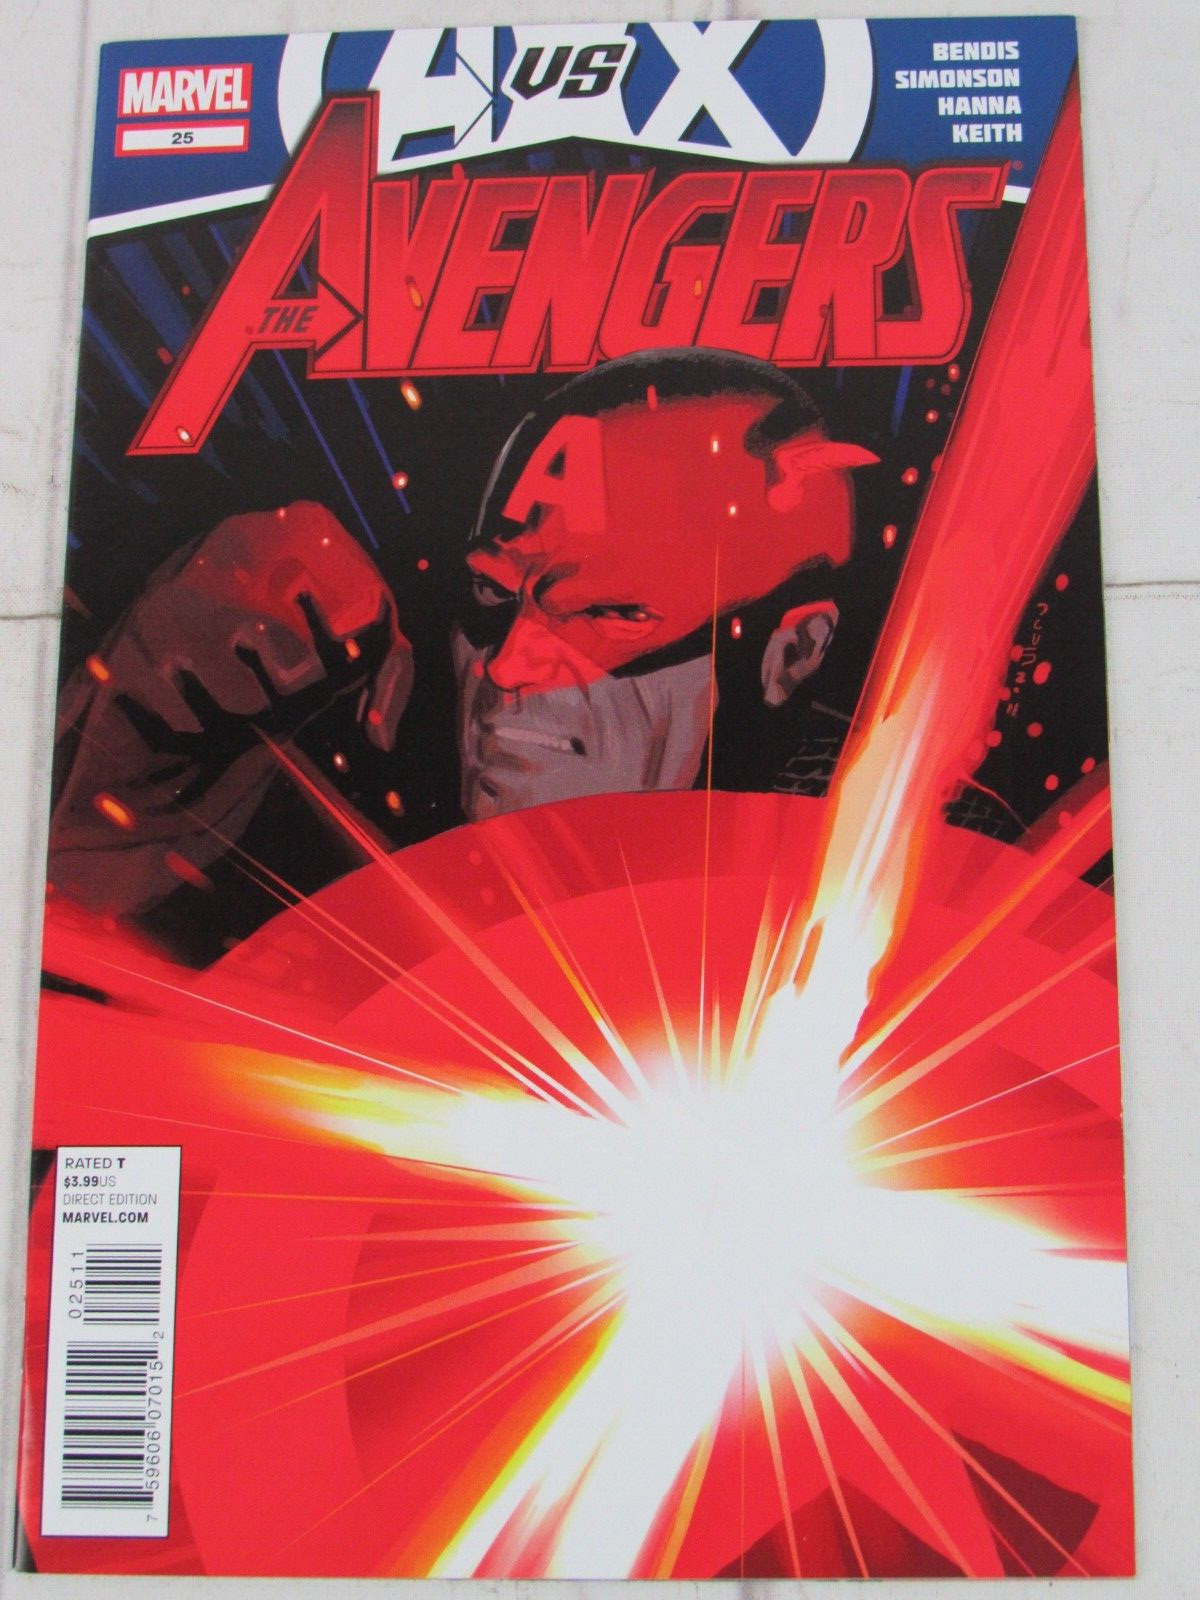 The Avengers #25 June 2012 Marvel Comics